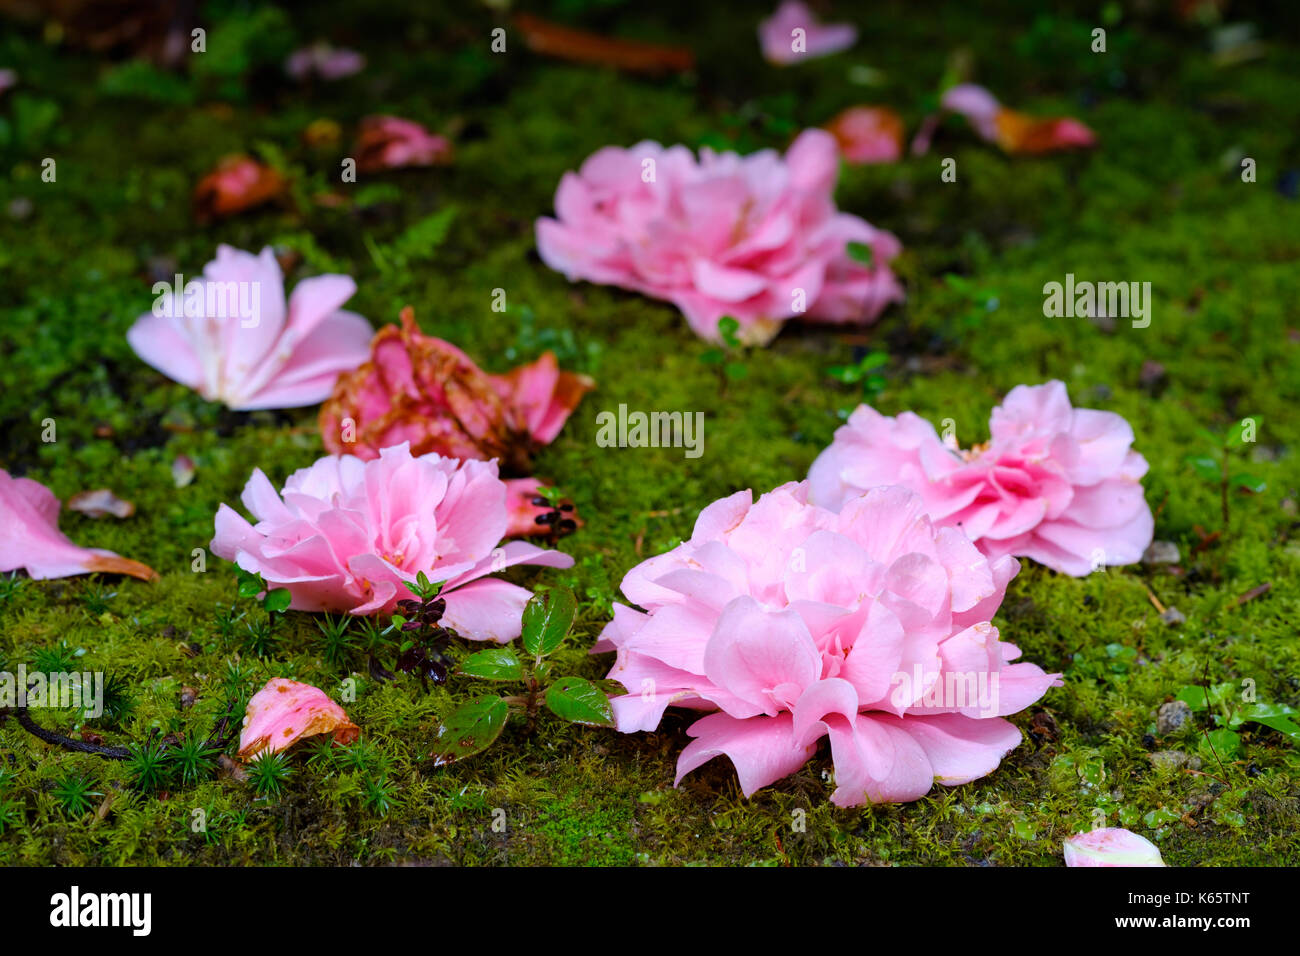 Fleurs fanées de camellia (camellia) sont allongés sur le sol, jardin, près de trewidden Penzance, Cornwall, Angleterre, Grande-Bretagne Banque D'Images